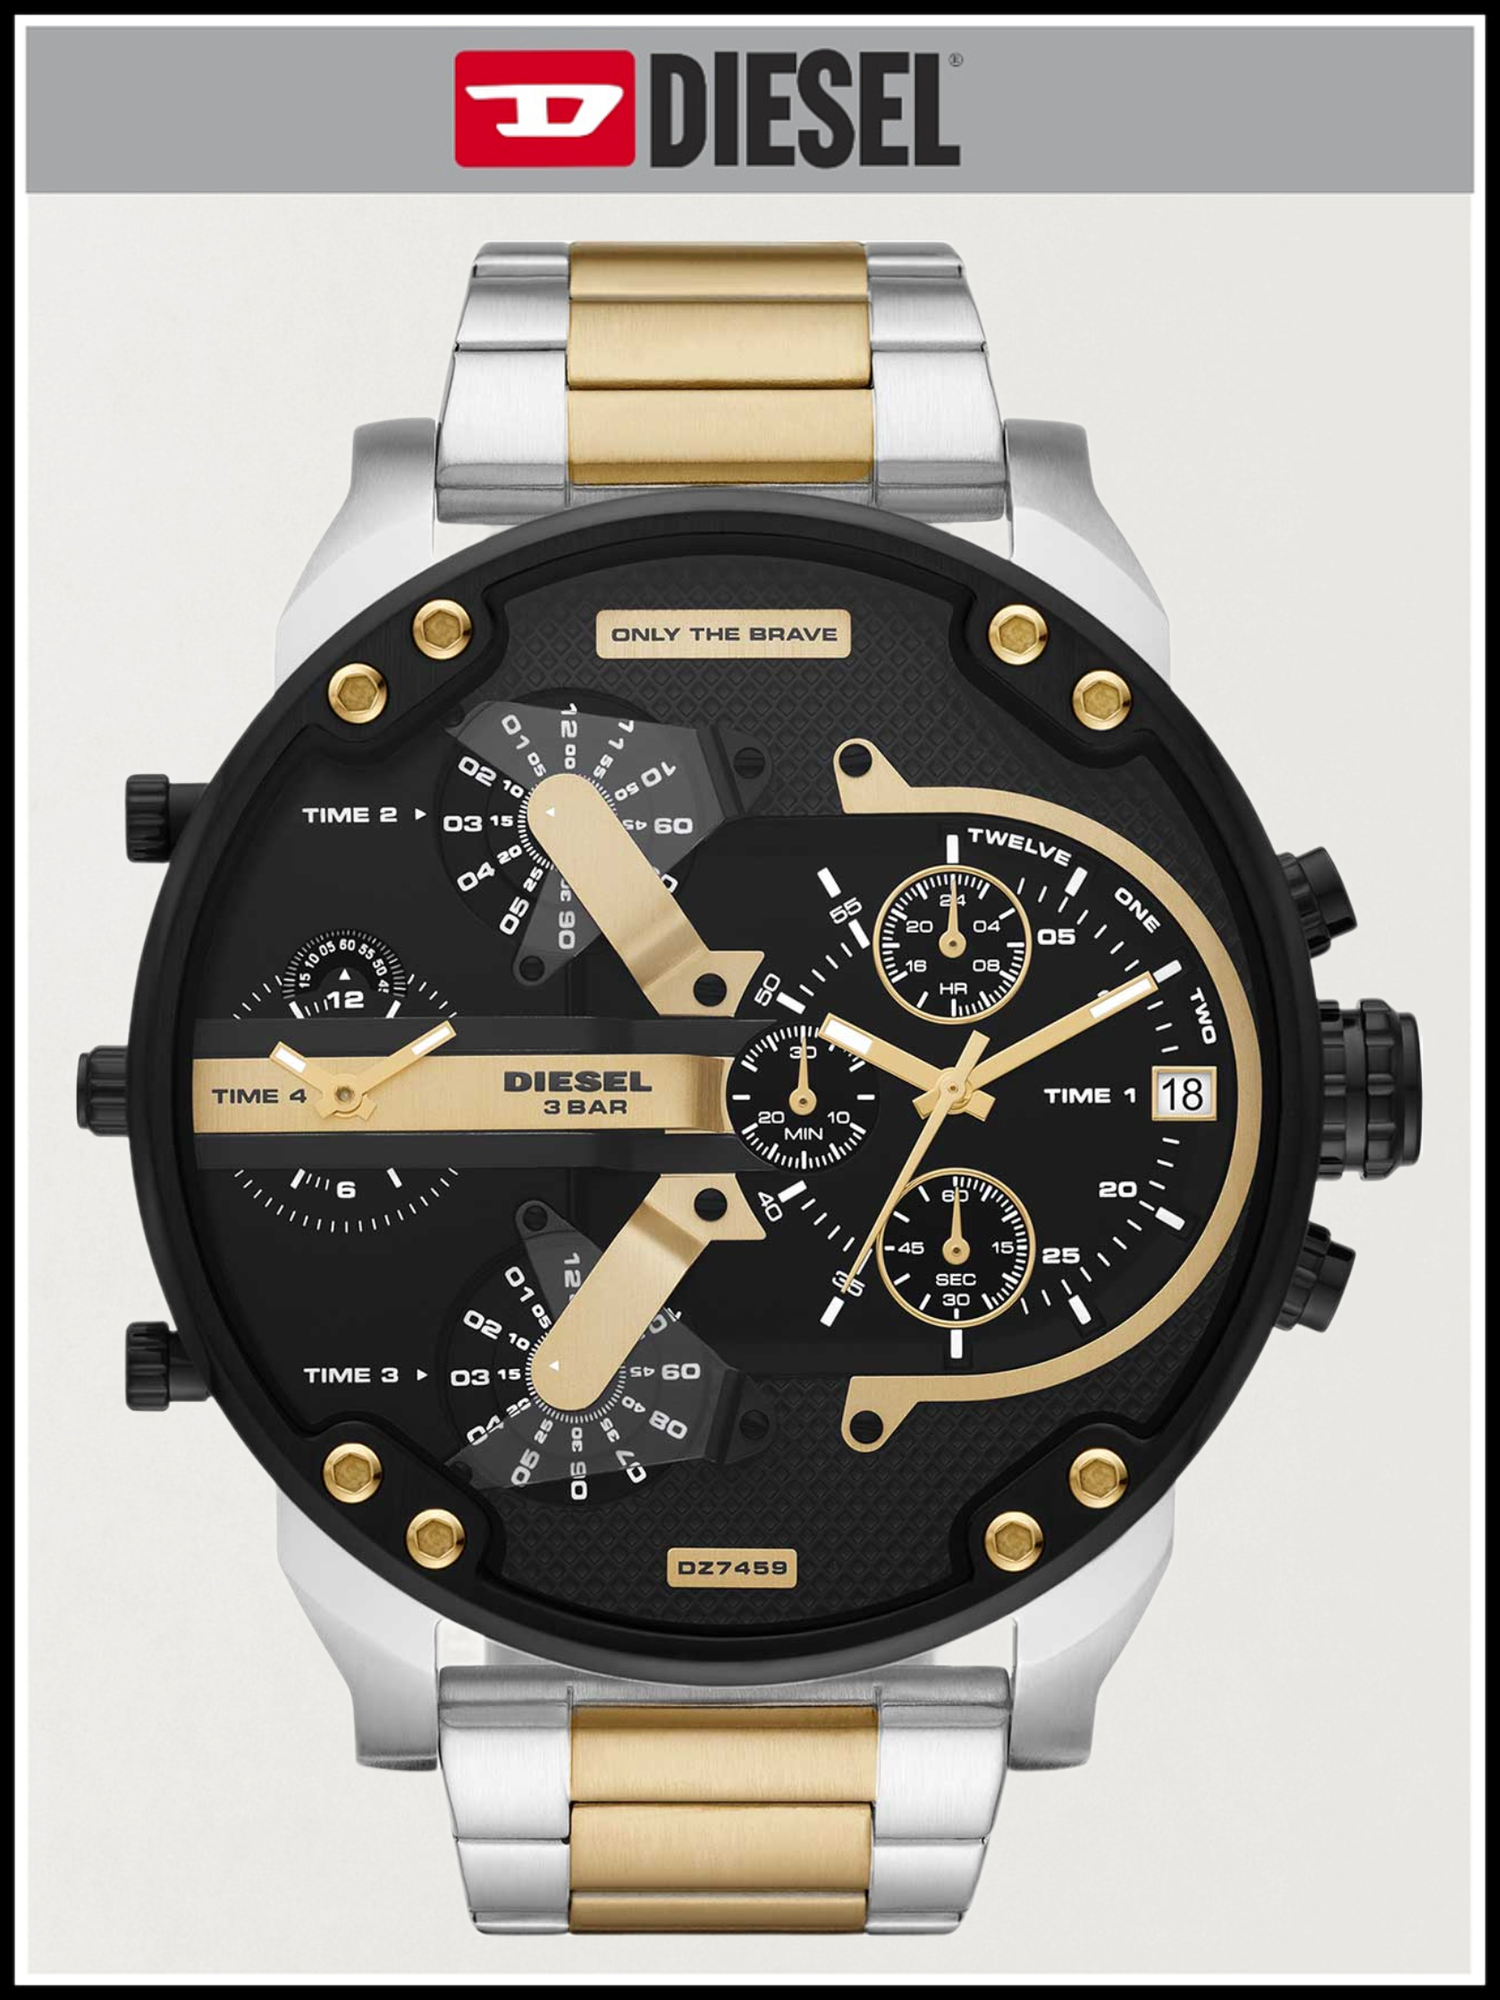 Мужские наручные часы Diesel золотые серебристые кварцевые оригинальные